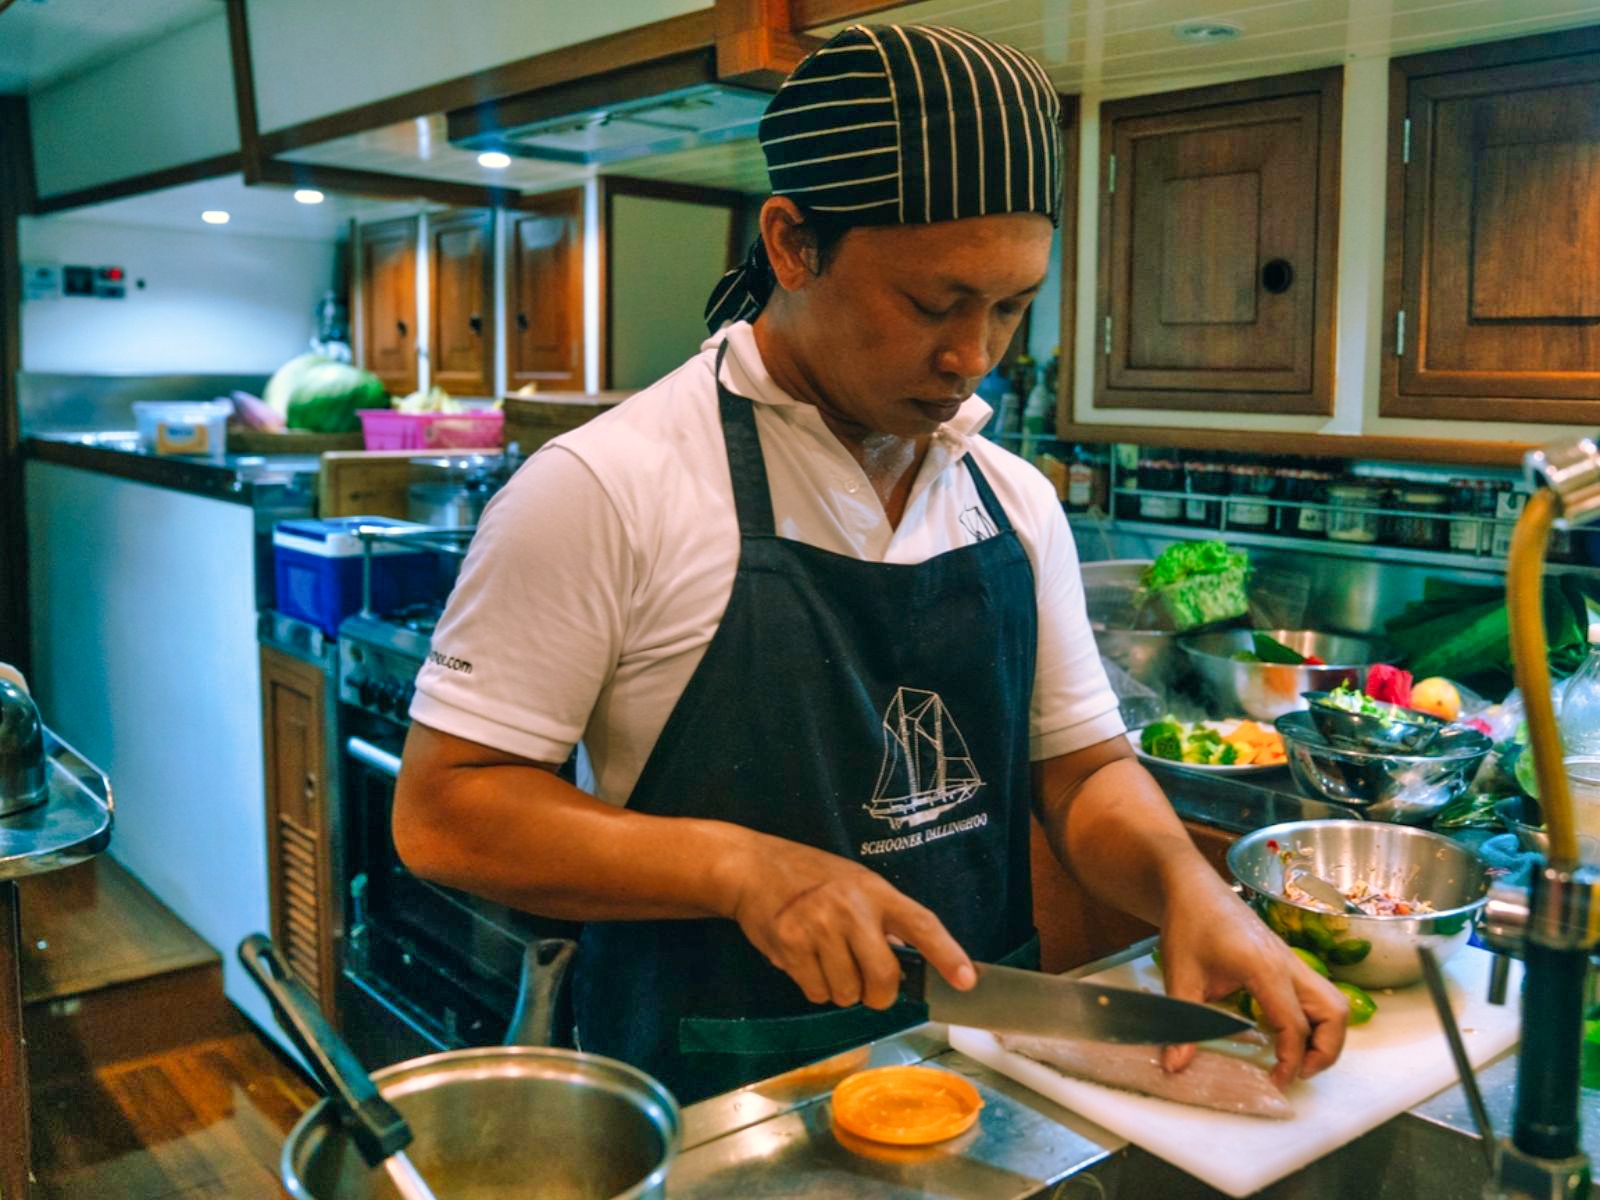 Thai chef on Dallinghoo